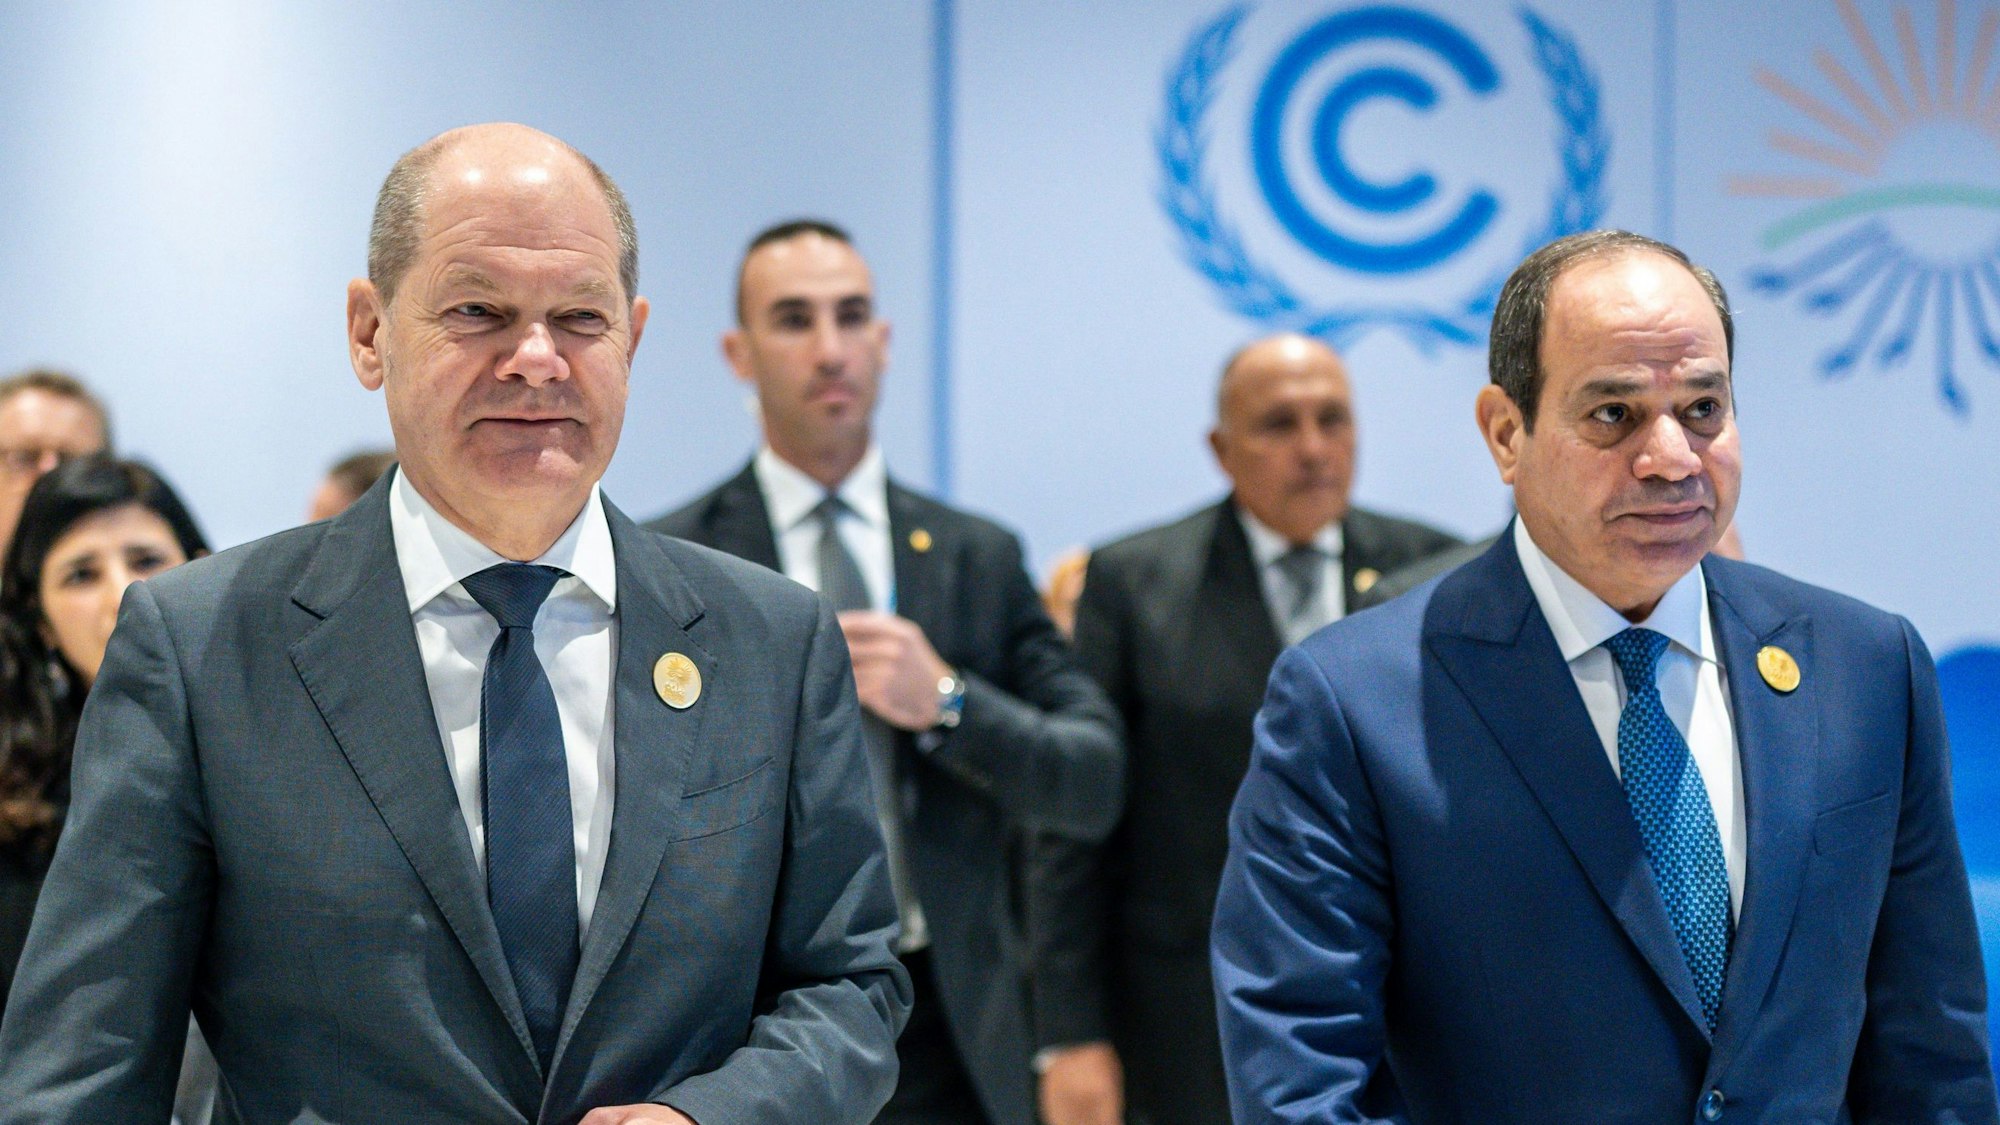 Ägypten, Scharm El Scheich: Bundeskanzler Olaf Scholz (SPD, l), geht neben Abdel Fattah Al-Sisi, Präsident von Ägypten, zum «Runden Tisch» unter dem Motto «Investing in the Future of Energy Green Hydrogen» (Investitionen in die Zukunft der Energie Grüner Wasserstoff) bei der UN-Weltklimakonferenz.